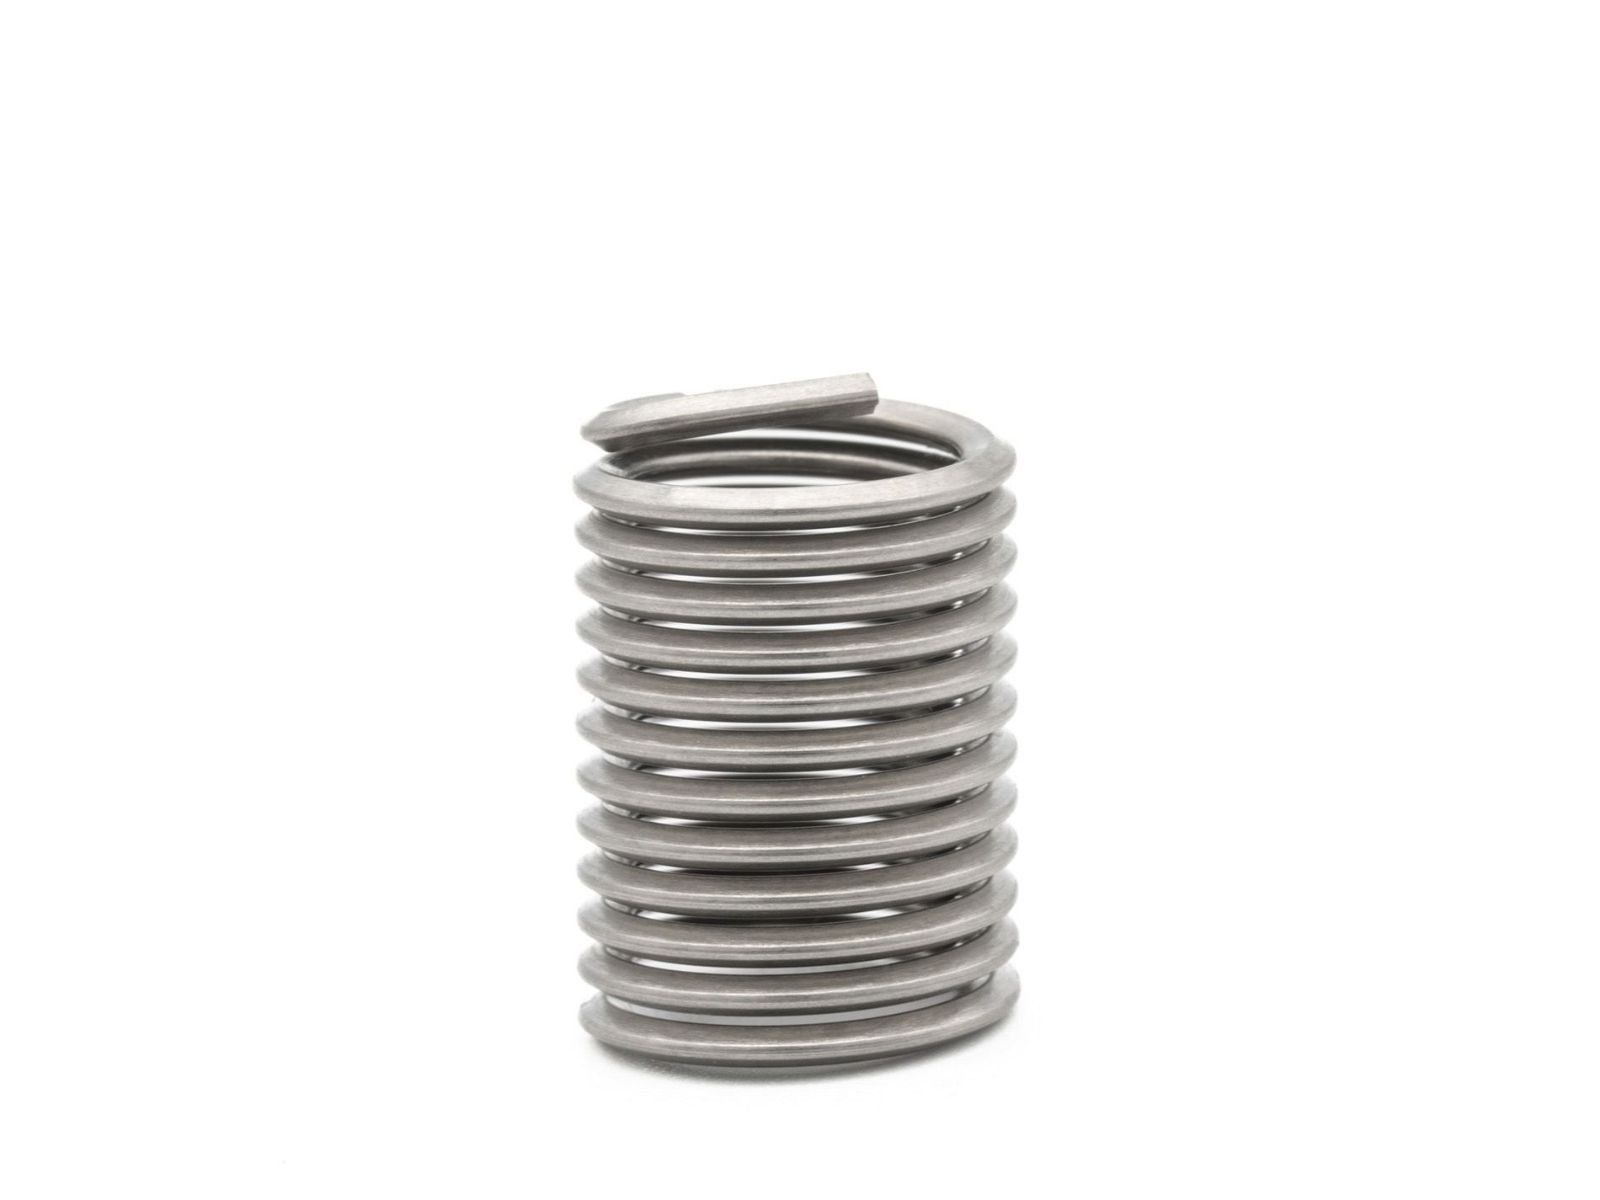 BaerCoil Wire Thread Inserts UNF No. 8 x 36 - 2.0 D (8.33 mm) -10 pcs.